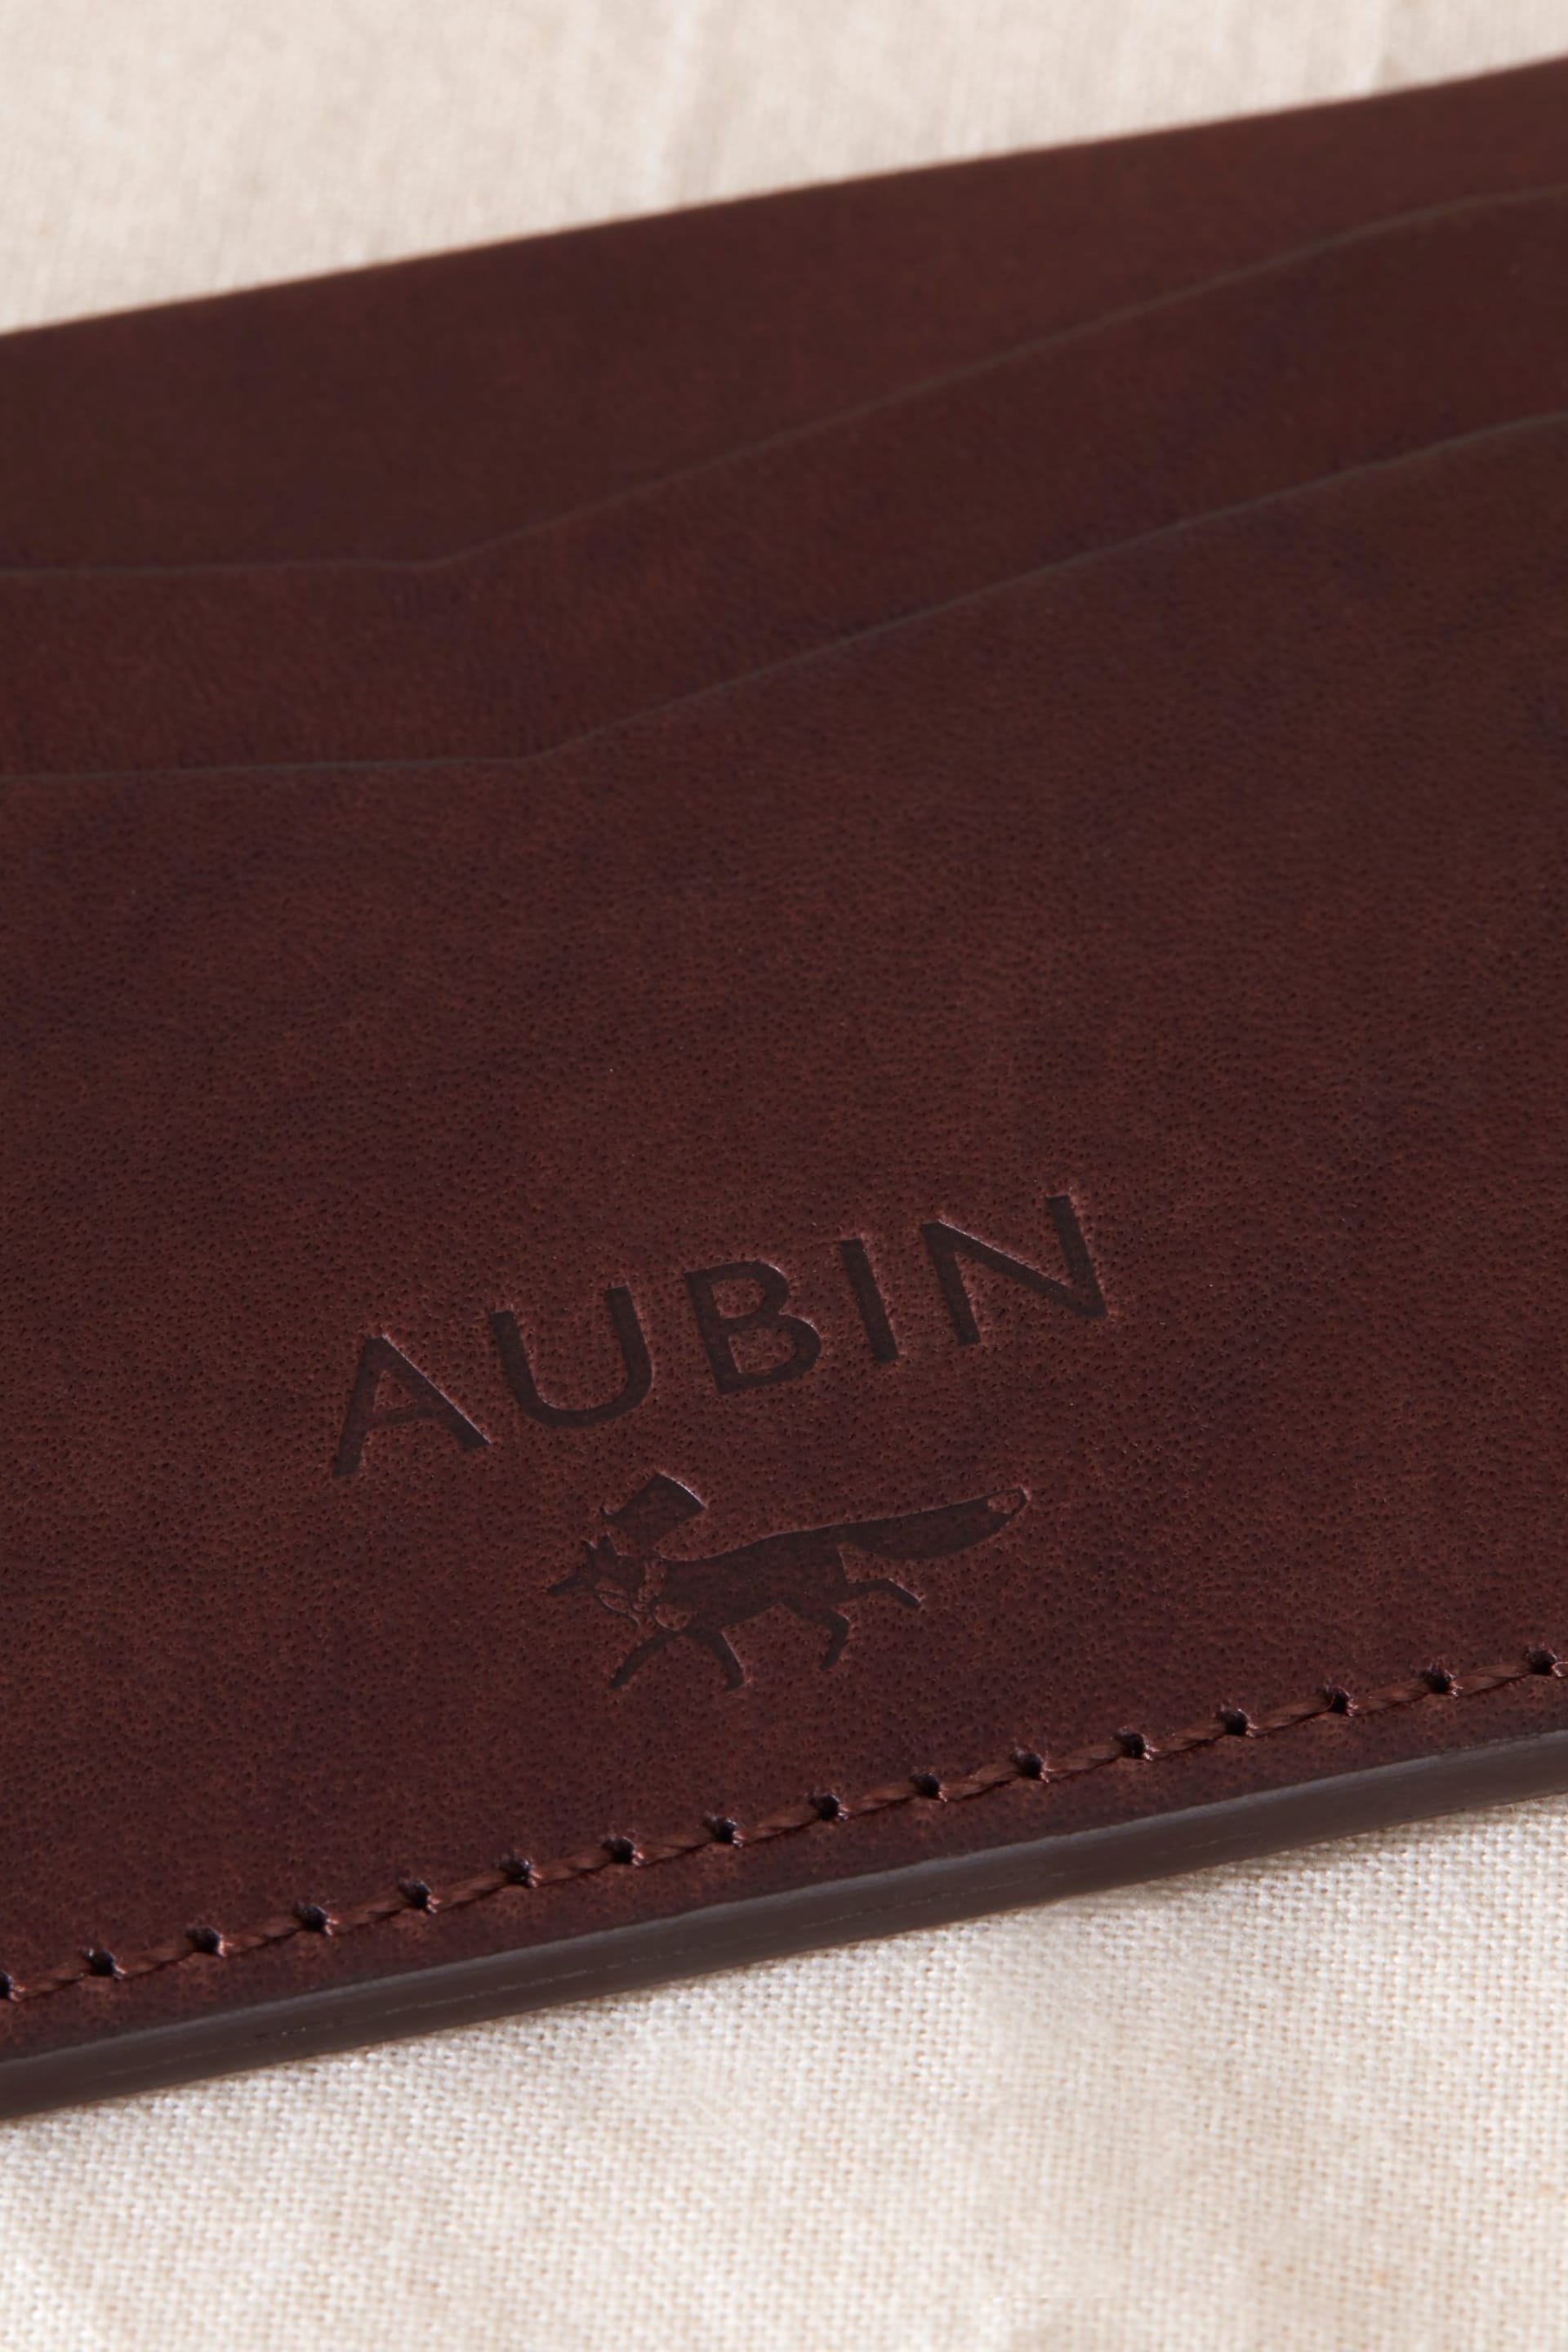 Aubin Stirling Leather Card Holder - Image 4 of 4